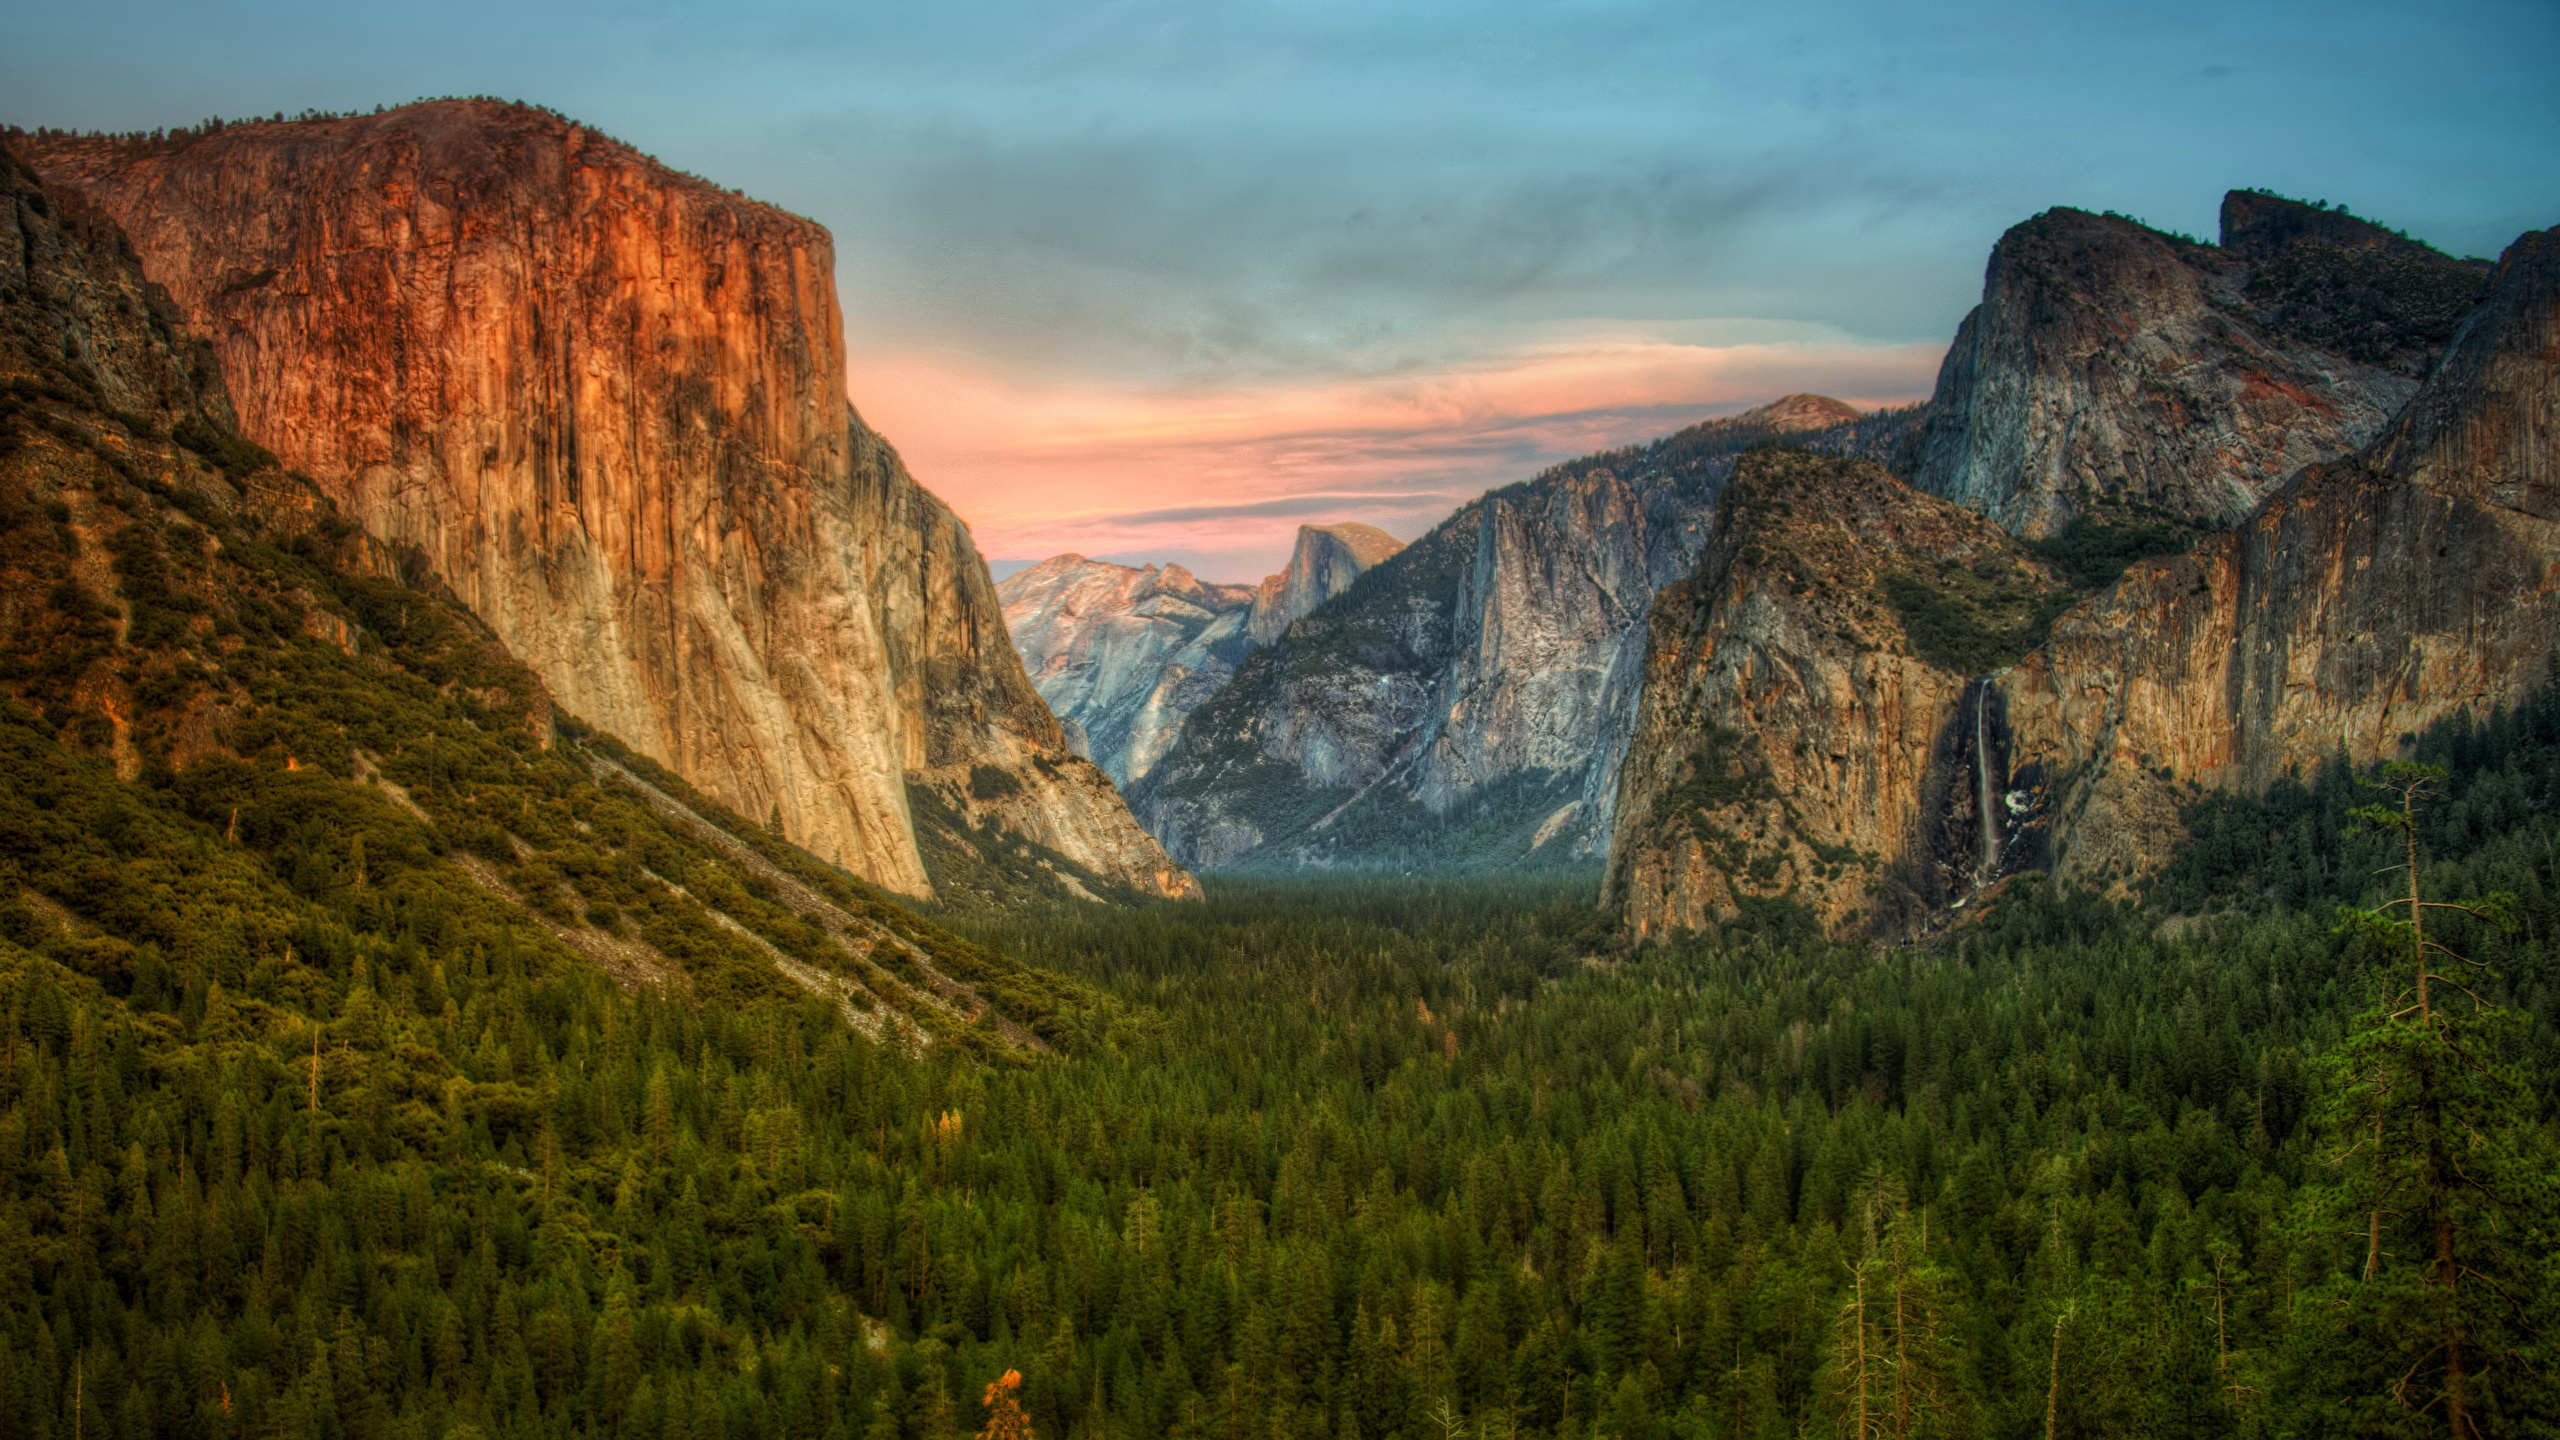 壁紙 2560x1440 山 森林 アメリカ合衆国 ハイダイナミックレンジ合成 ヨセミテ国立公園 カリフォルニア州 自然 ダウンロード 写真